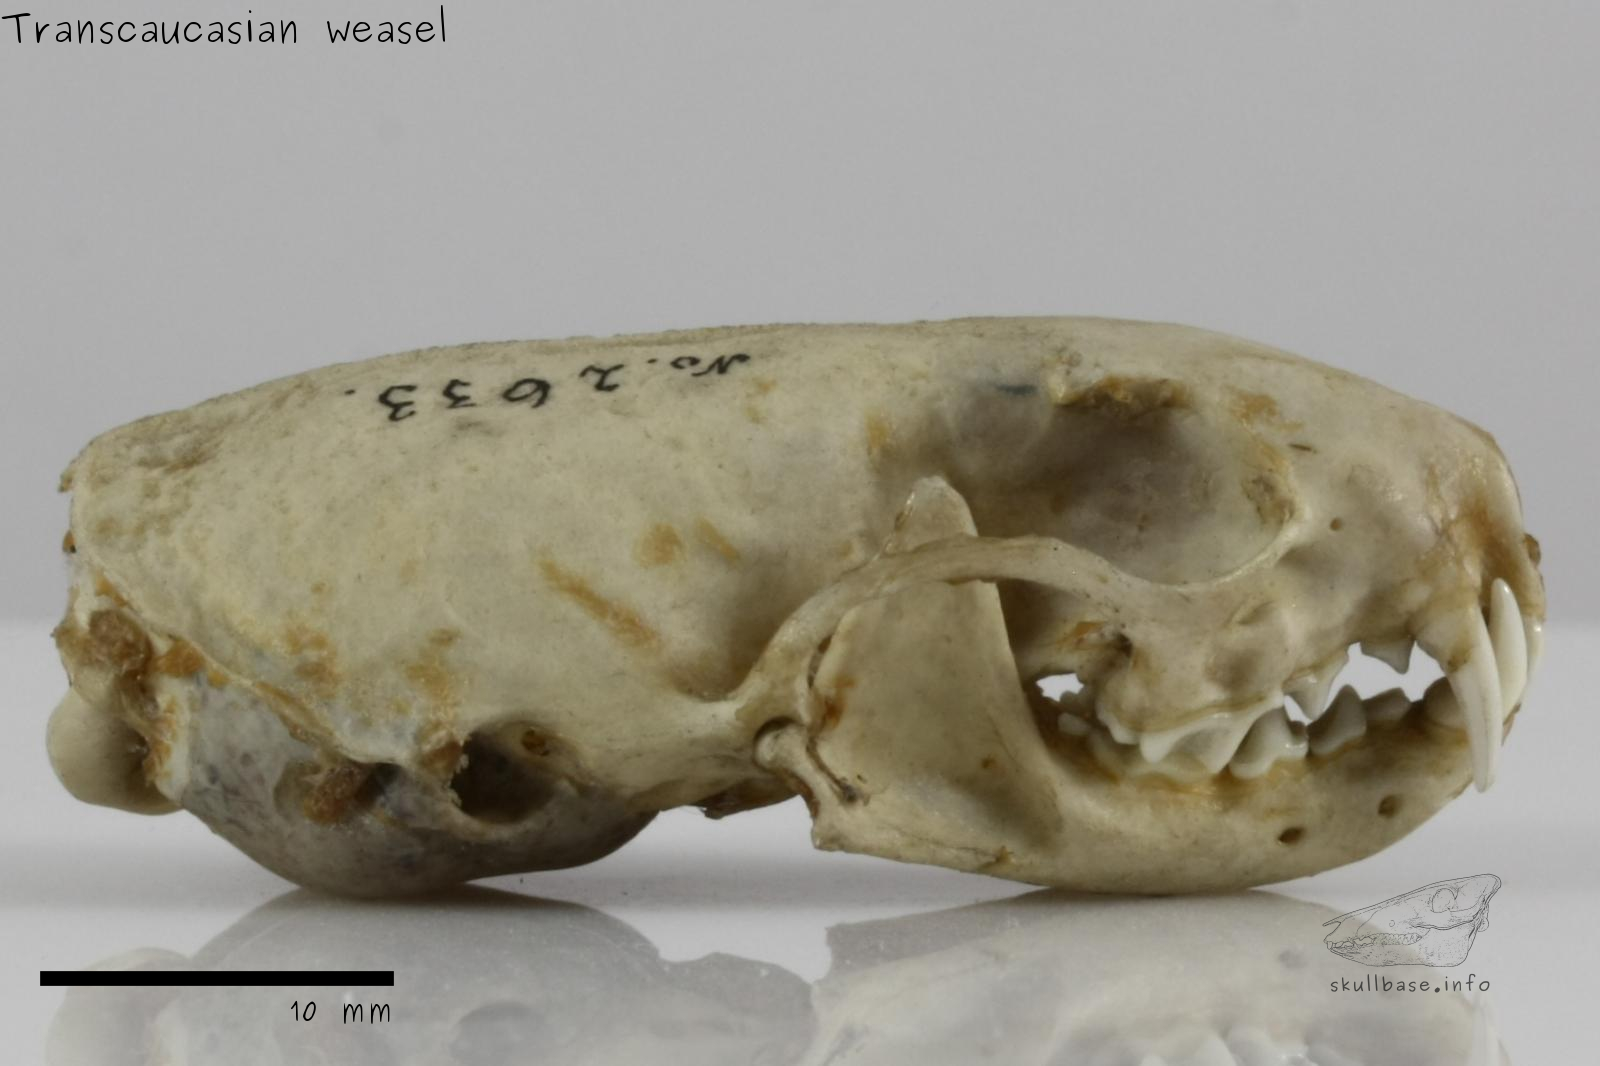 Transcaucasian weasel (Mustela nivalis boccamela) skull lateral view